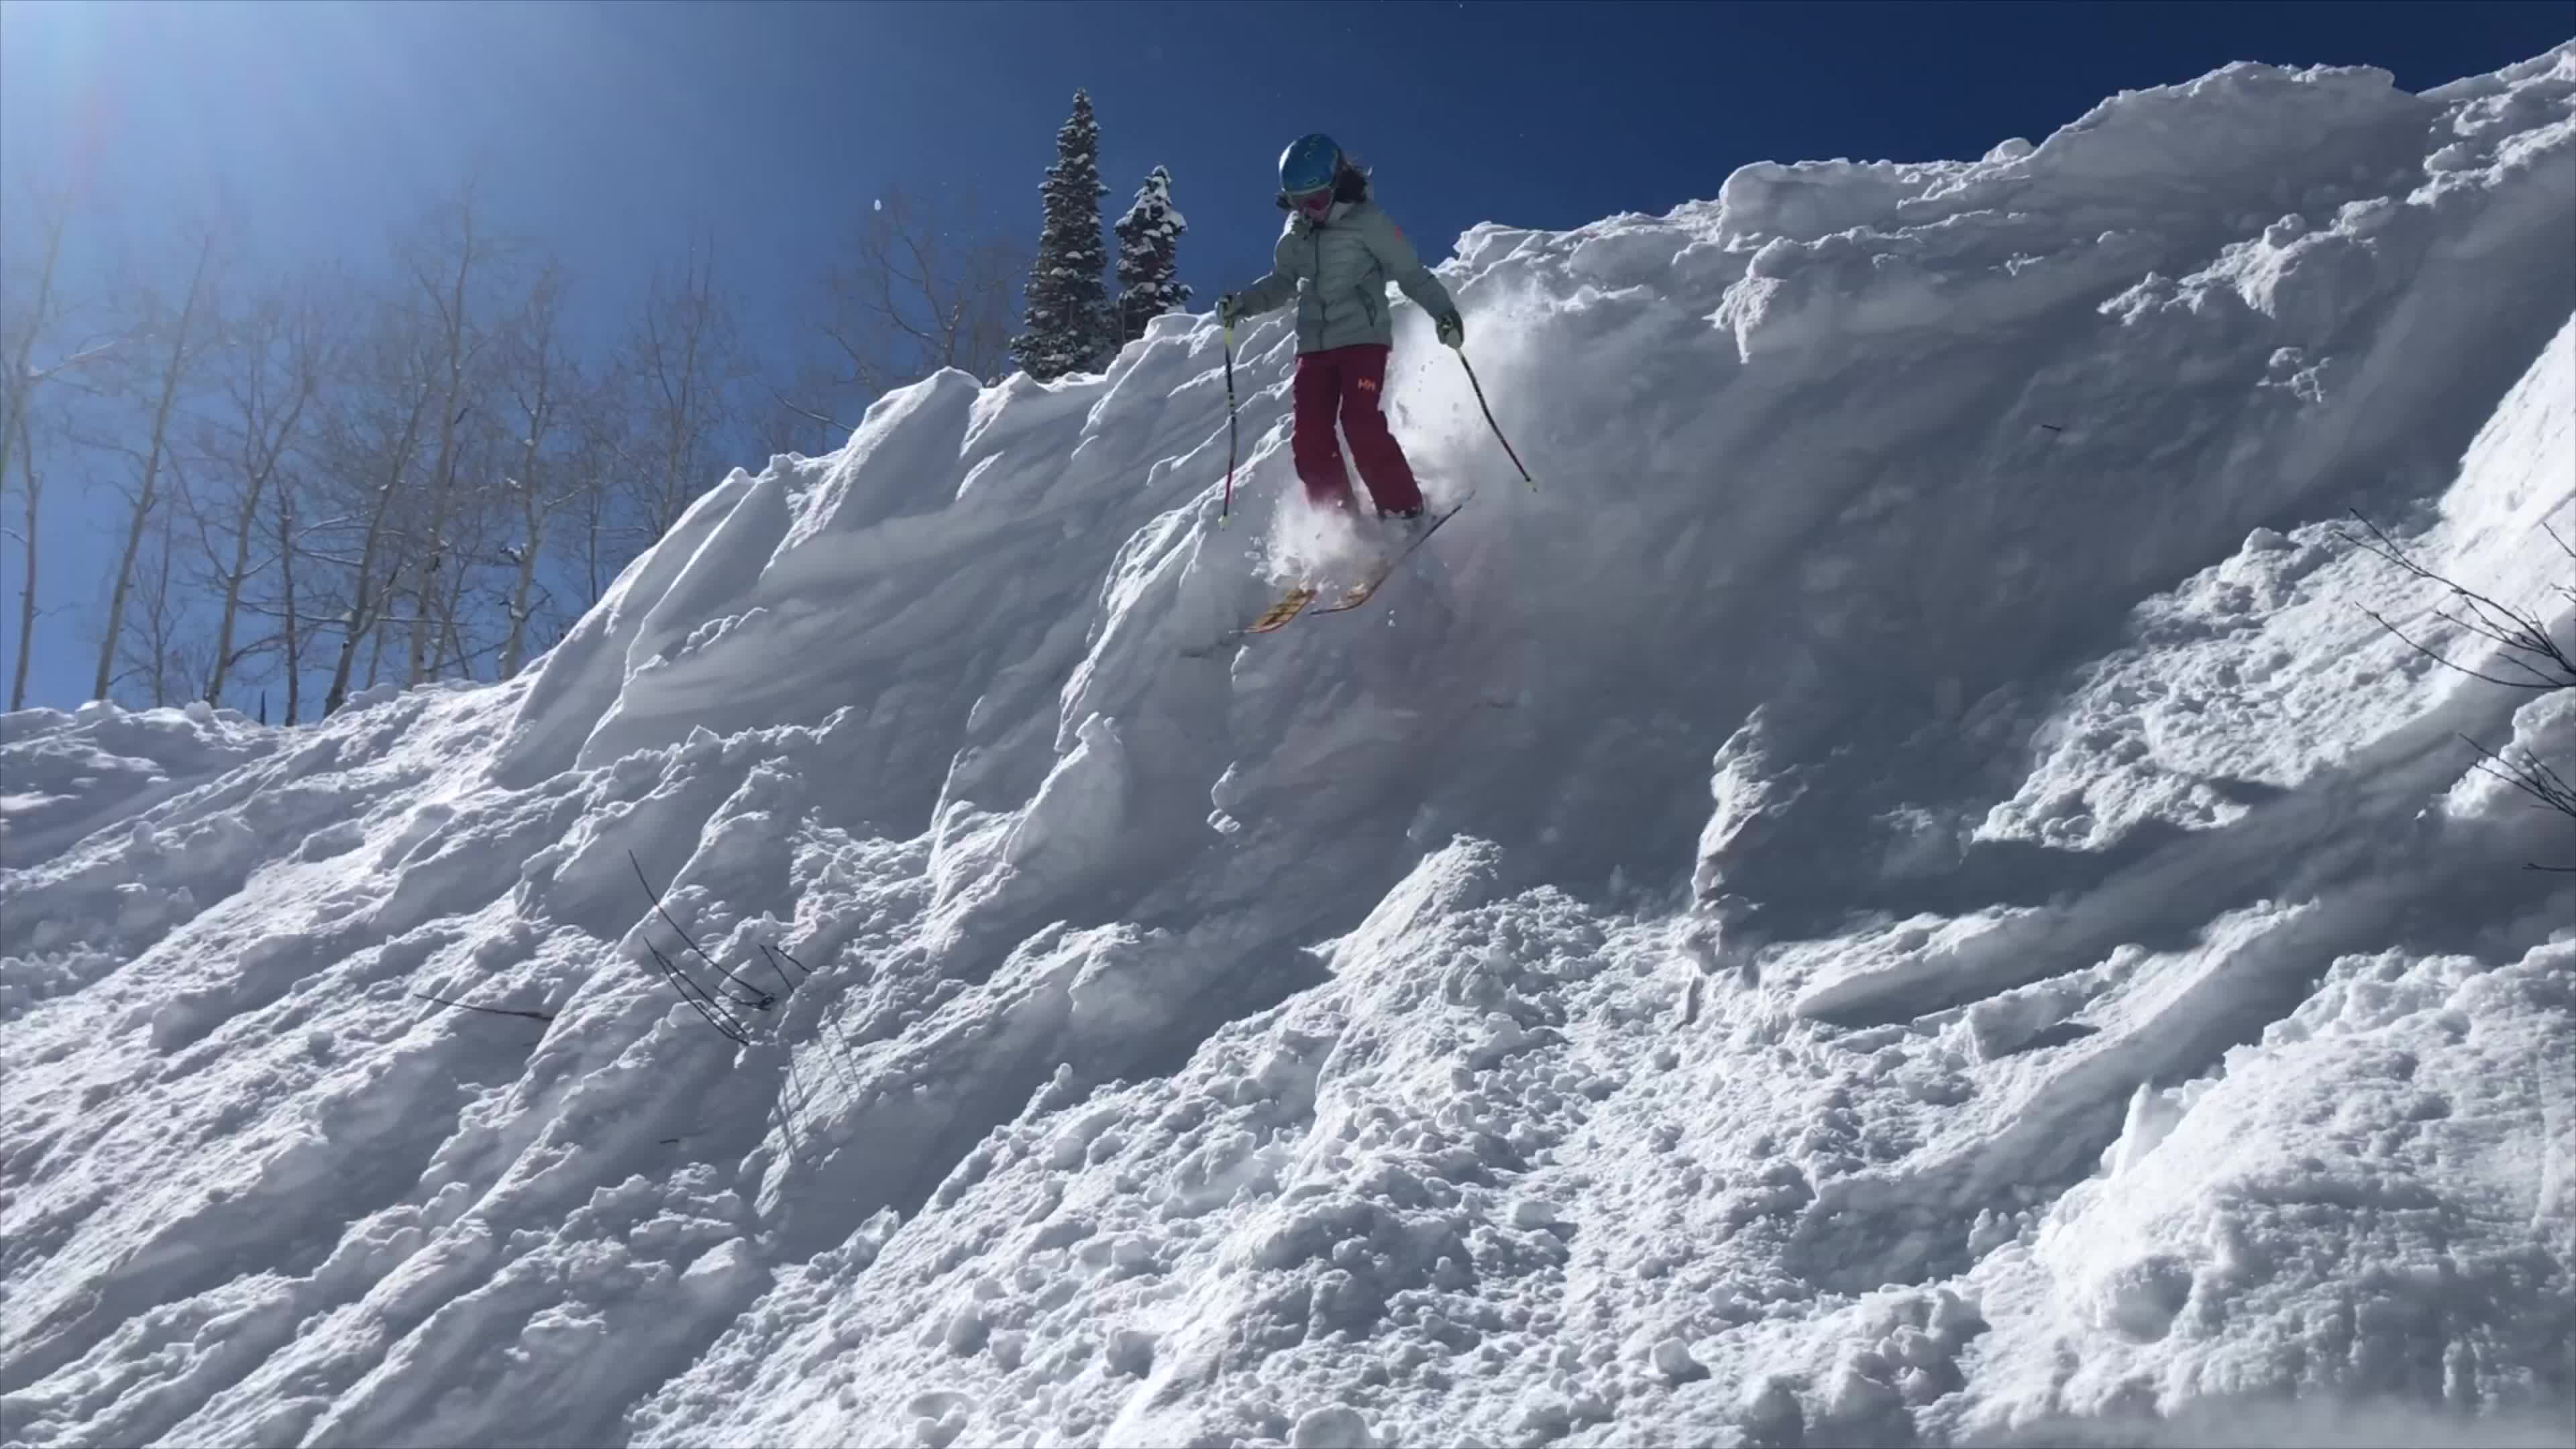 Skiing Wisconsin 2018 - Videos - Newschoolers.com